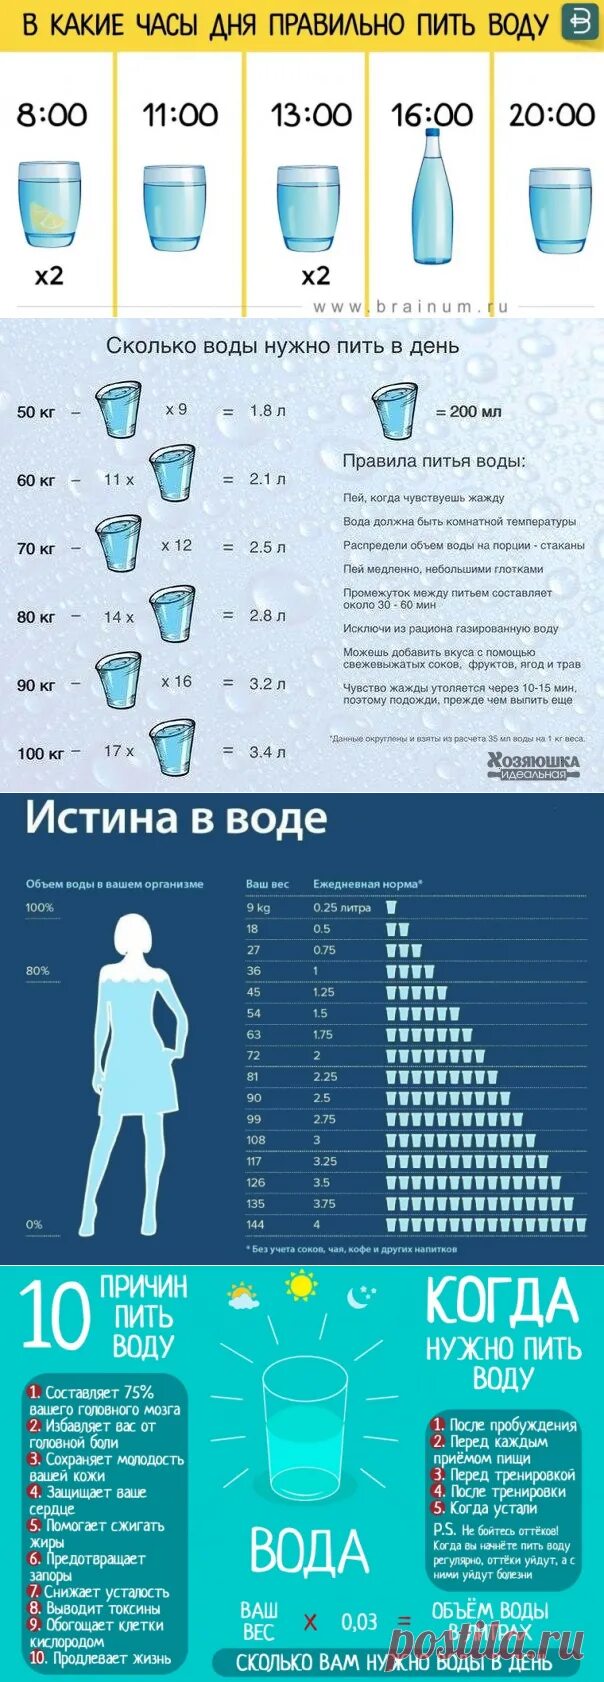 Сколько час пить надо. Как правильноаить воду. График правильного питья воды. Как правильно пить воду. Какипрааилтно пить воду.